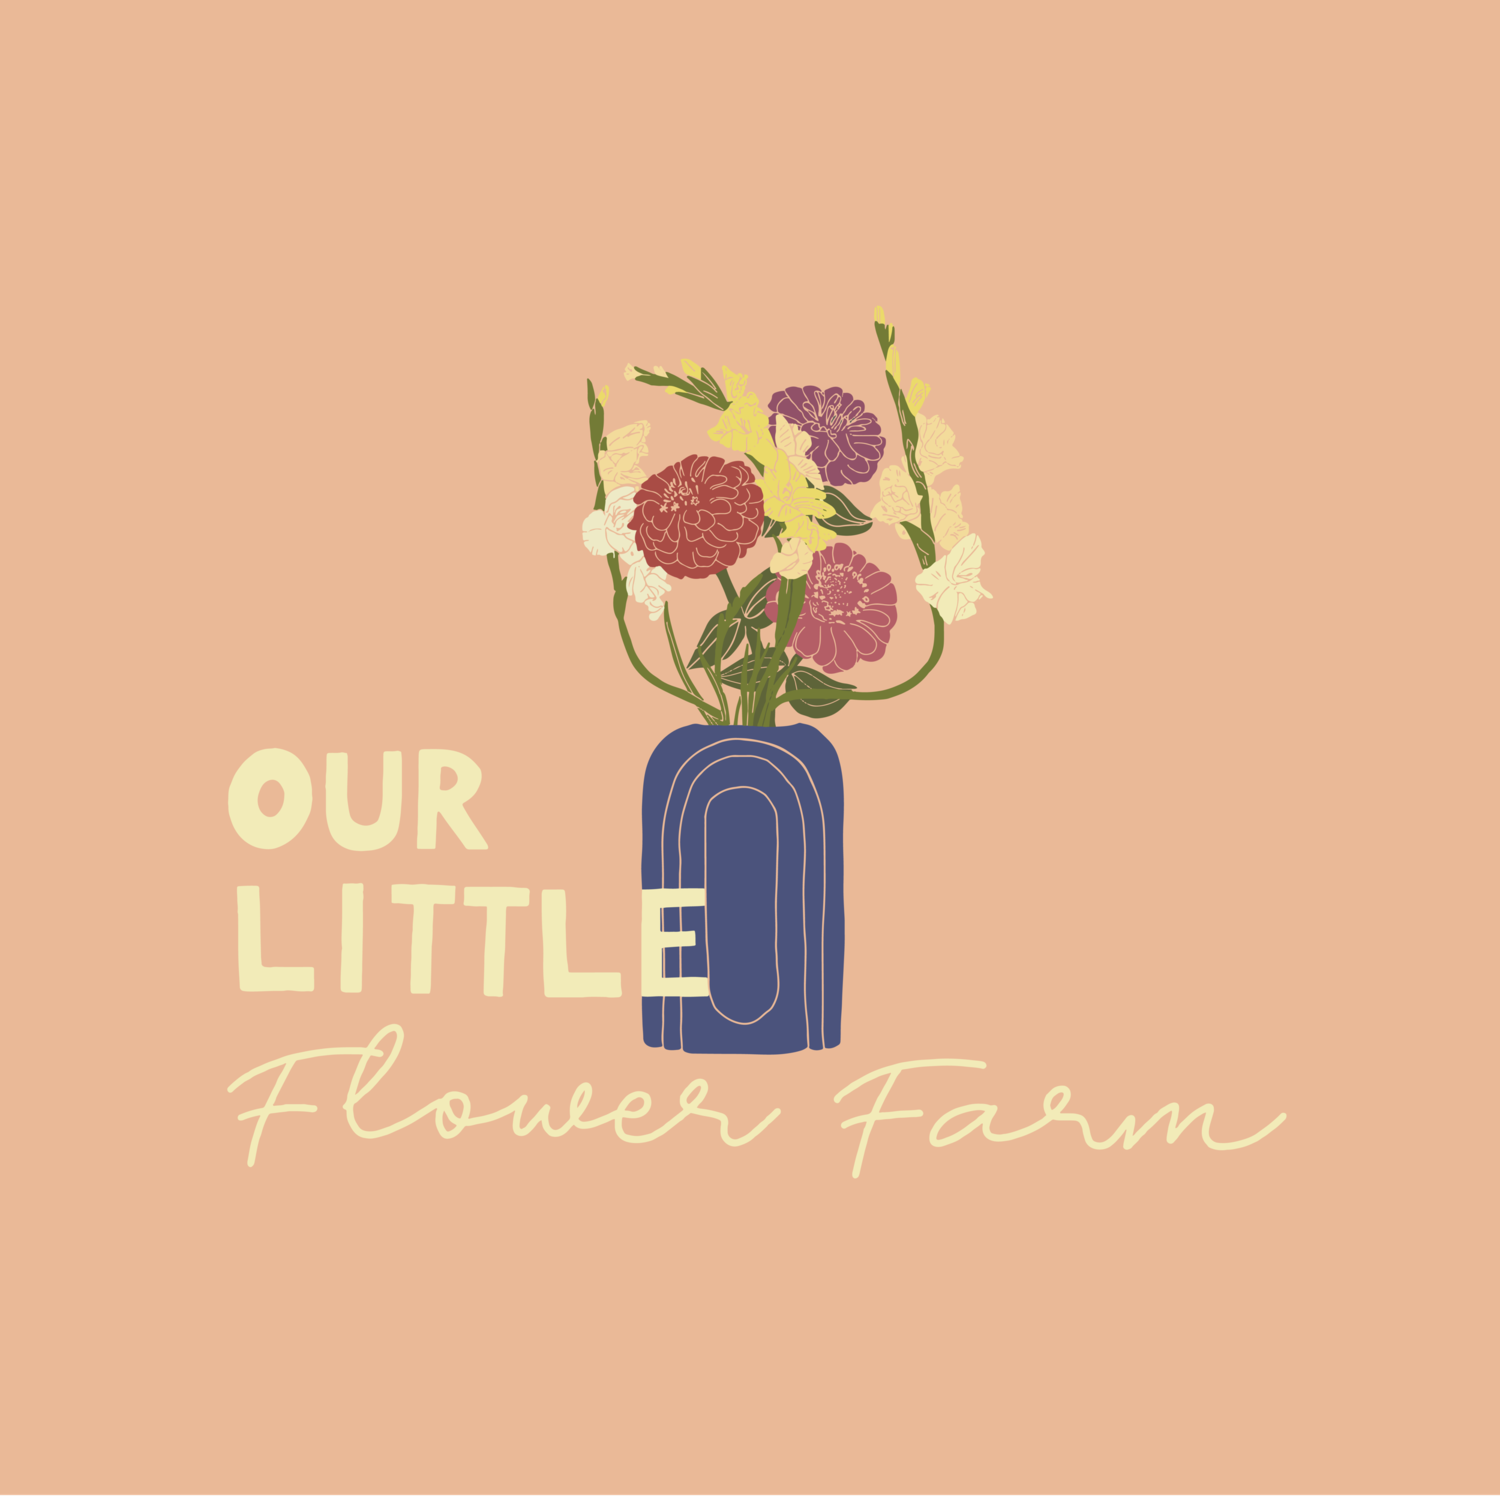 Our Little Flower Farm